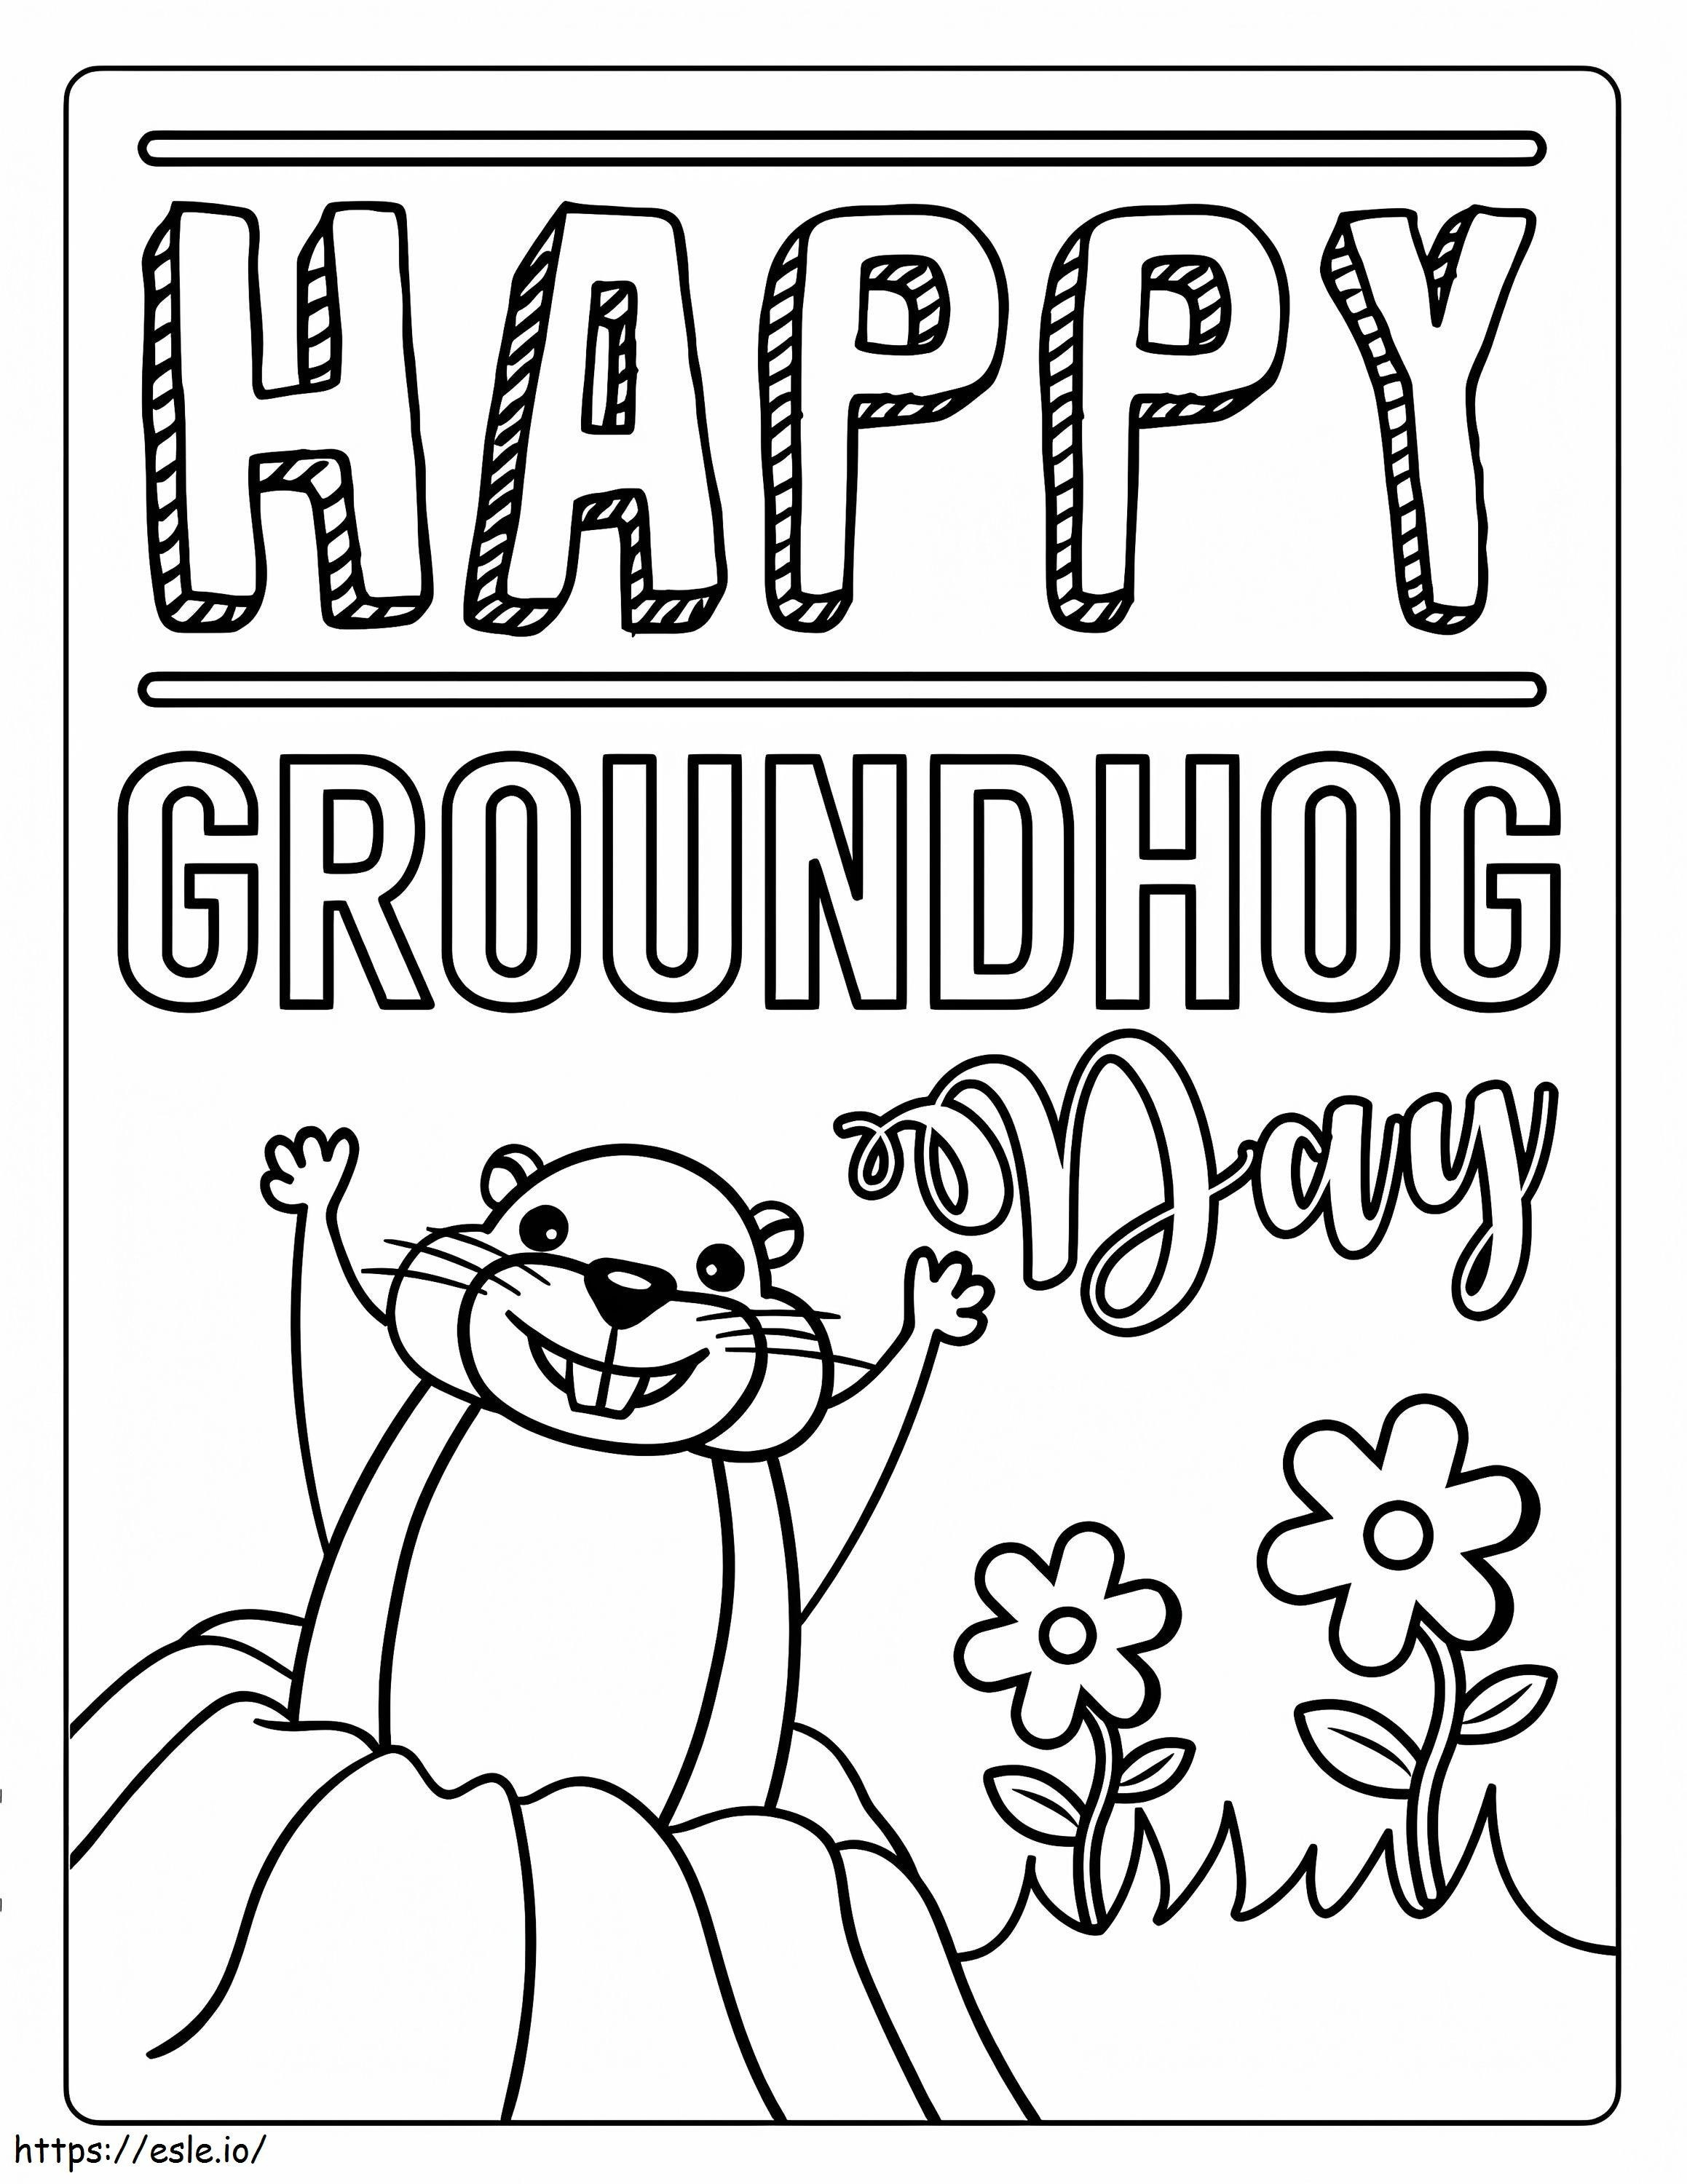 Groundhog Hari 2 Gambar Mewarnai